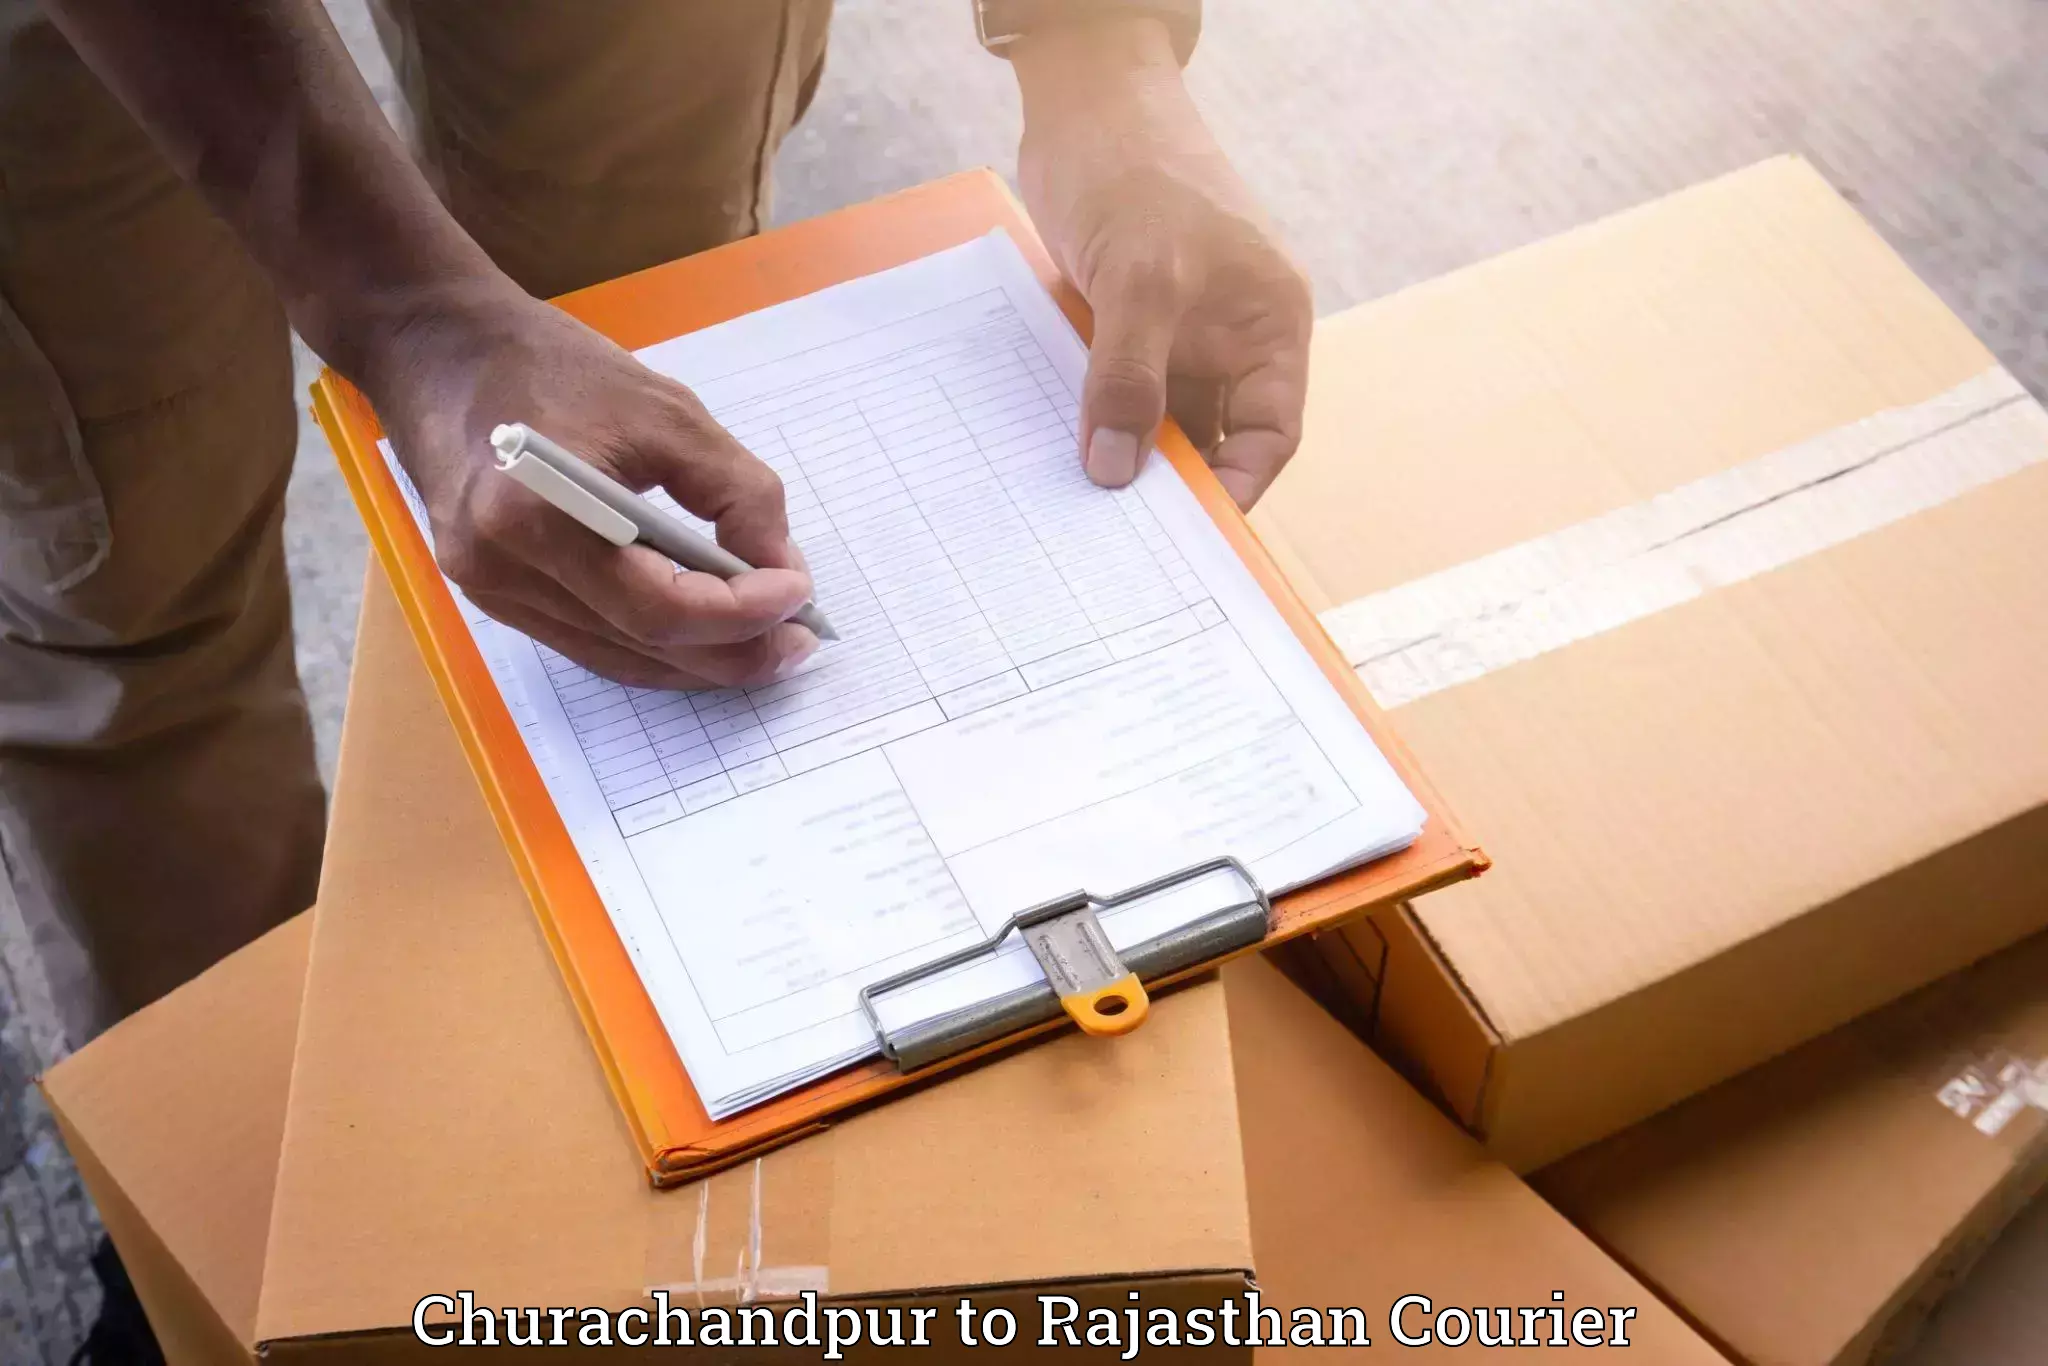 Furniture moving experts Churachandpur to Rajasthan